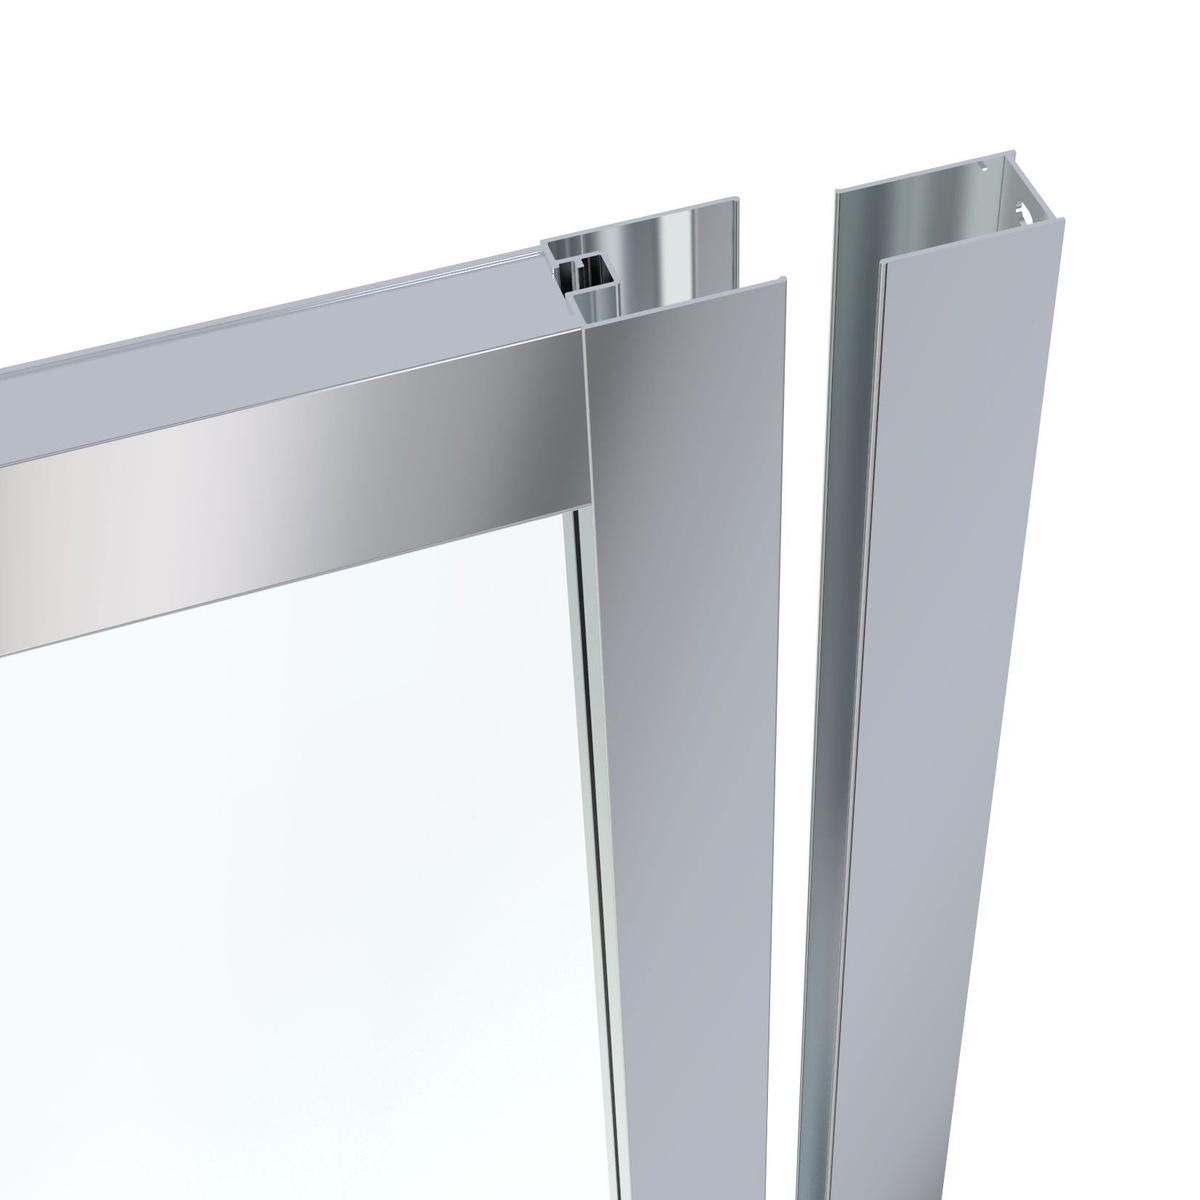 Двері скляні для душової ніші розсувні трисекційні EGER LEXO 91.5x195см прозоре скло 6мм профіль хром 599-809/1